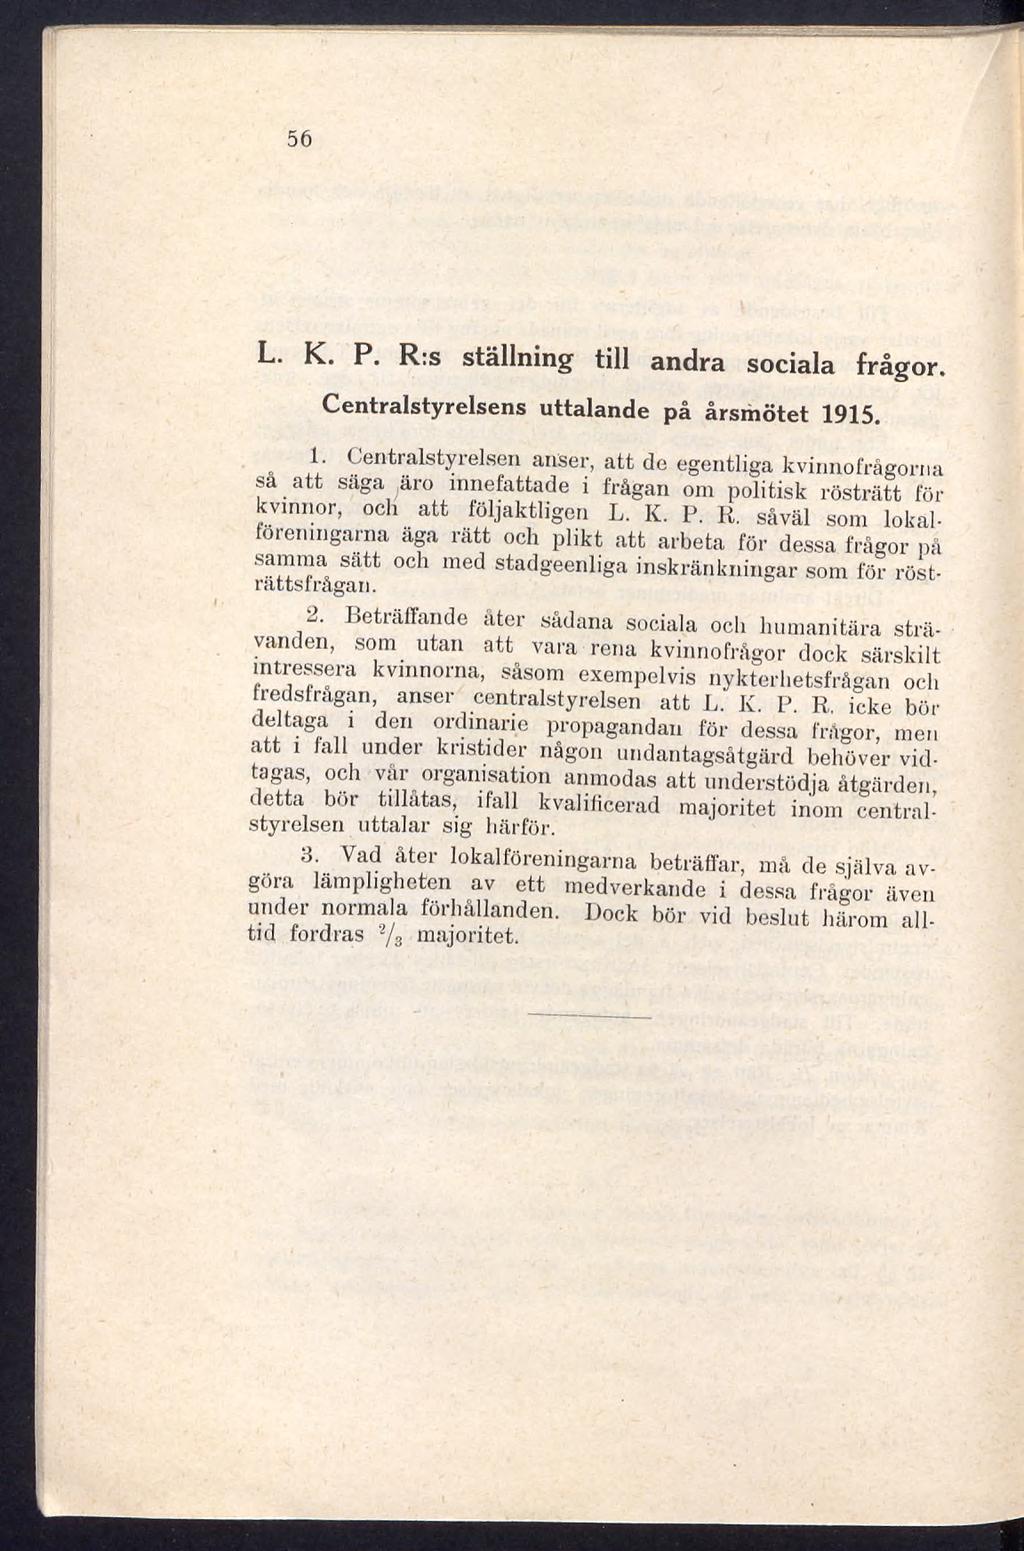 56 L. K. P. R:s ställning till andra sociala frågor. Centralstyrelsens uttalande på årsmötet 1915.